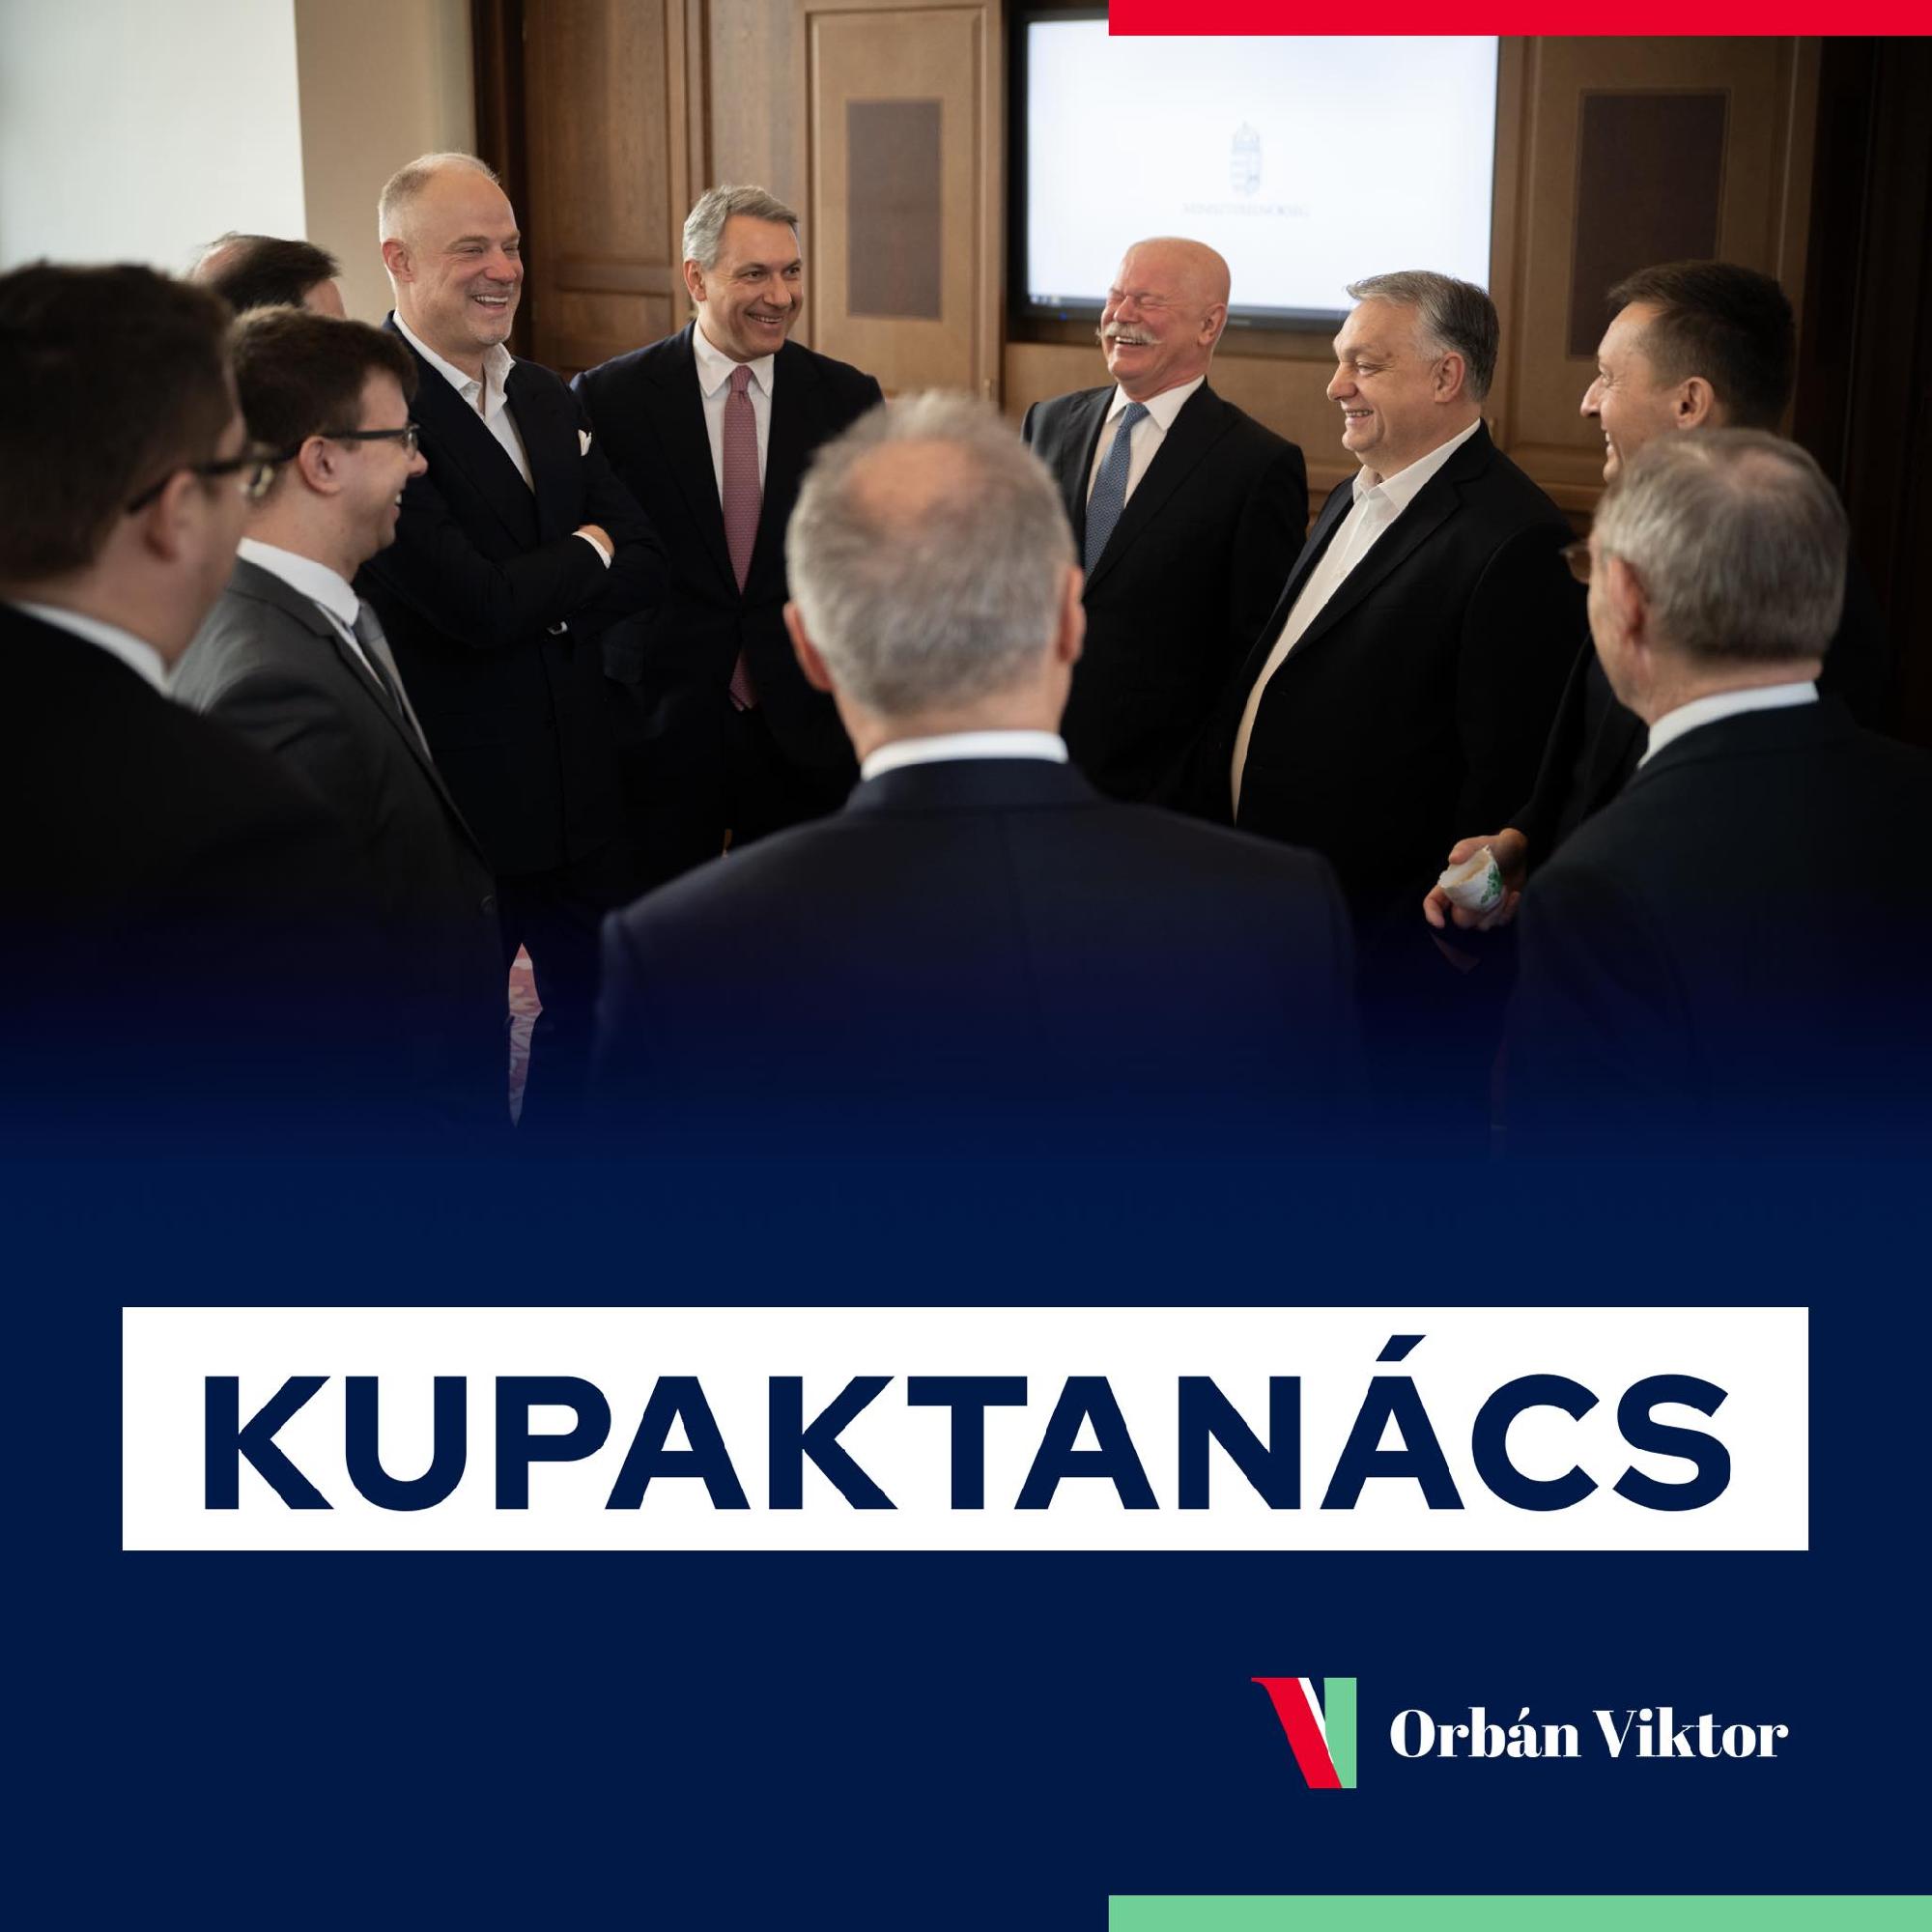 A Karmelitában kupaktanácsozik Orbán Viktor 